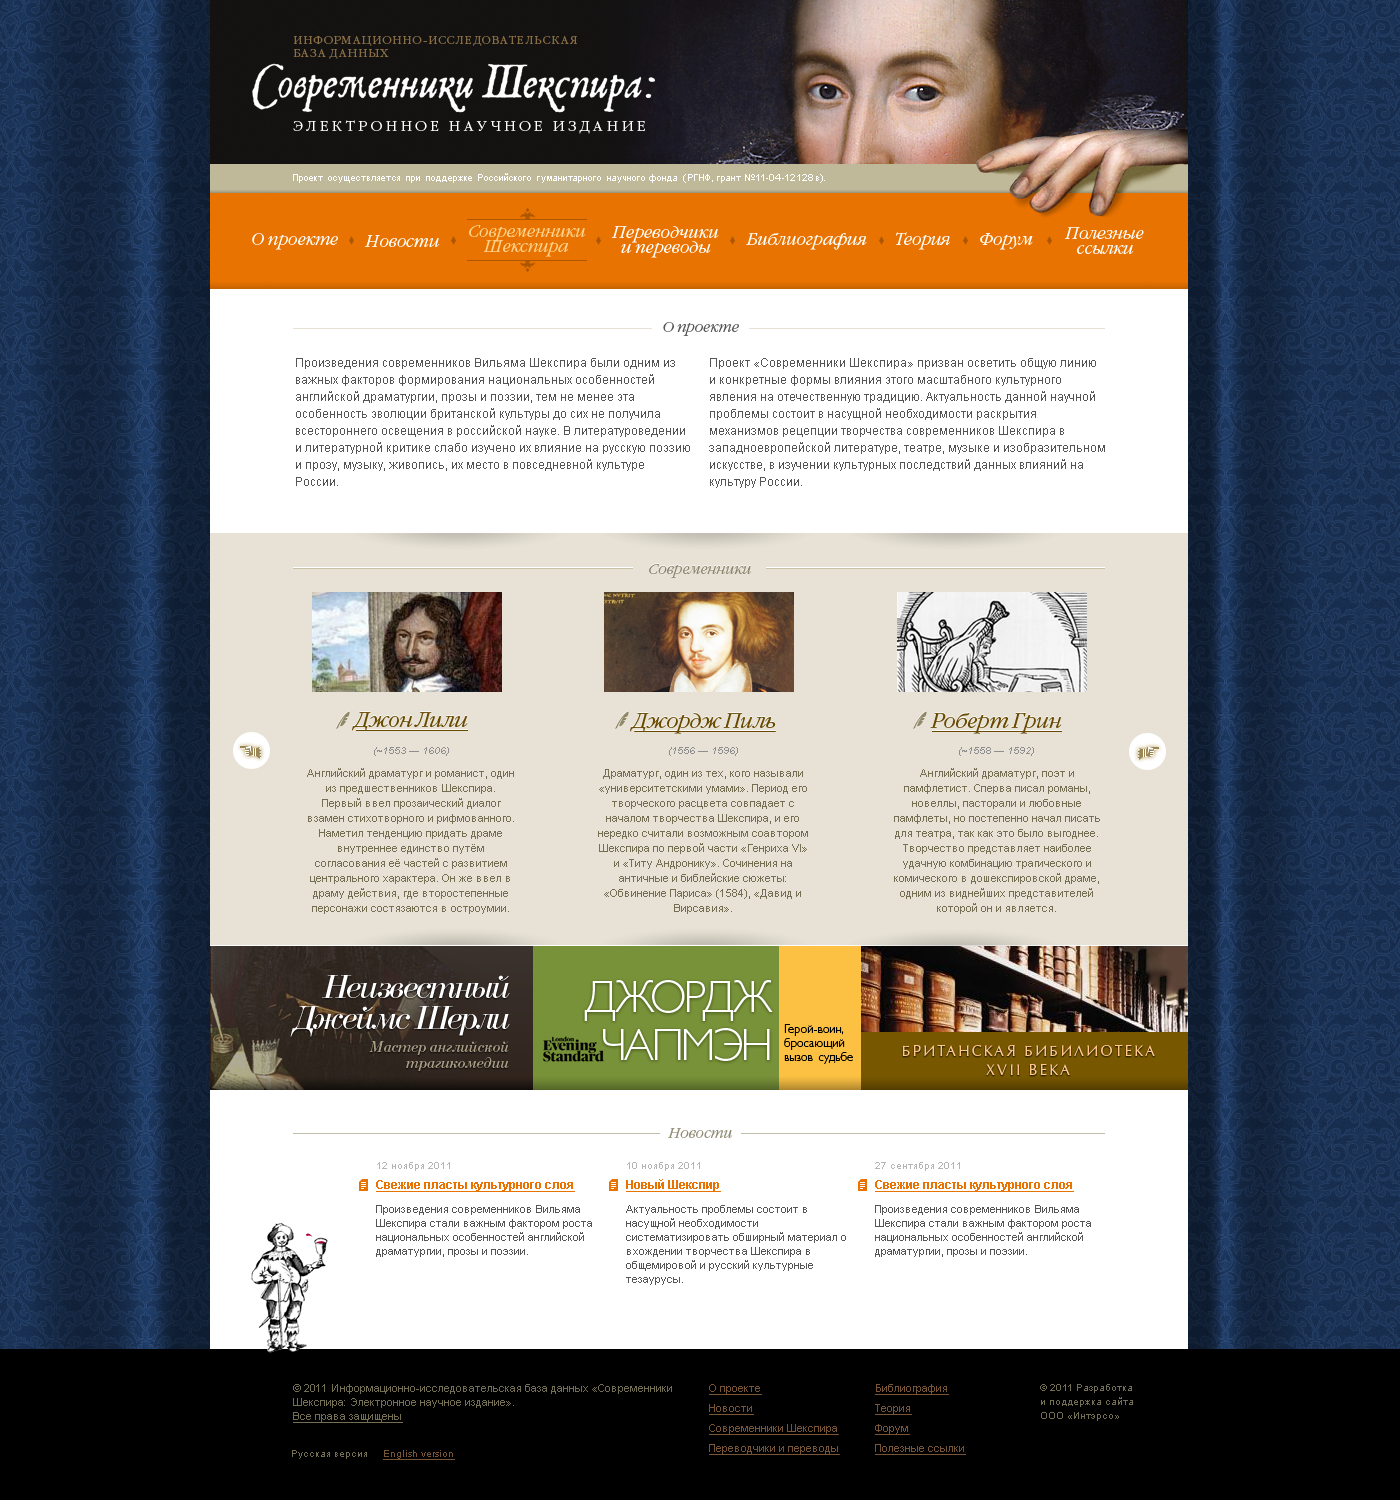 Рабочий макет главной страницы базы данных "Современники Шекспира: электронное научное издание"